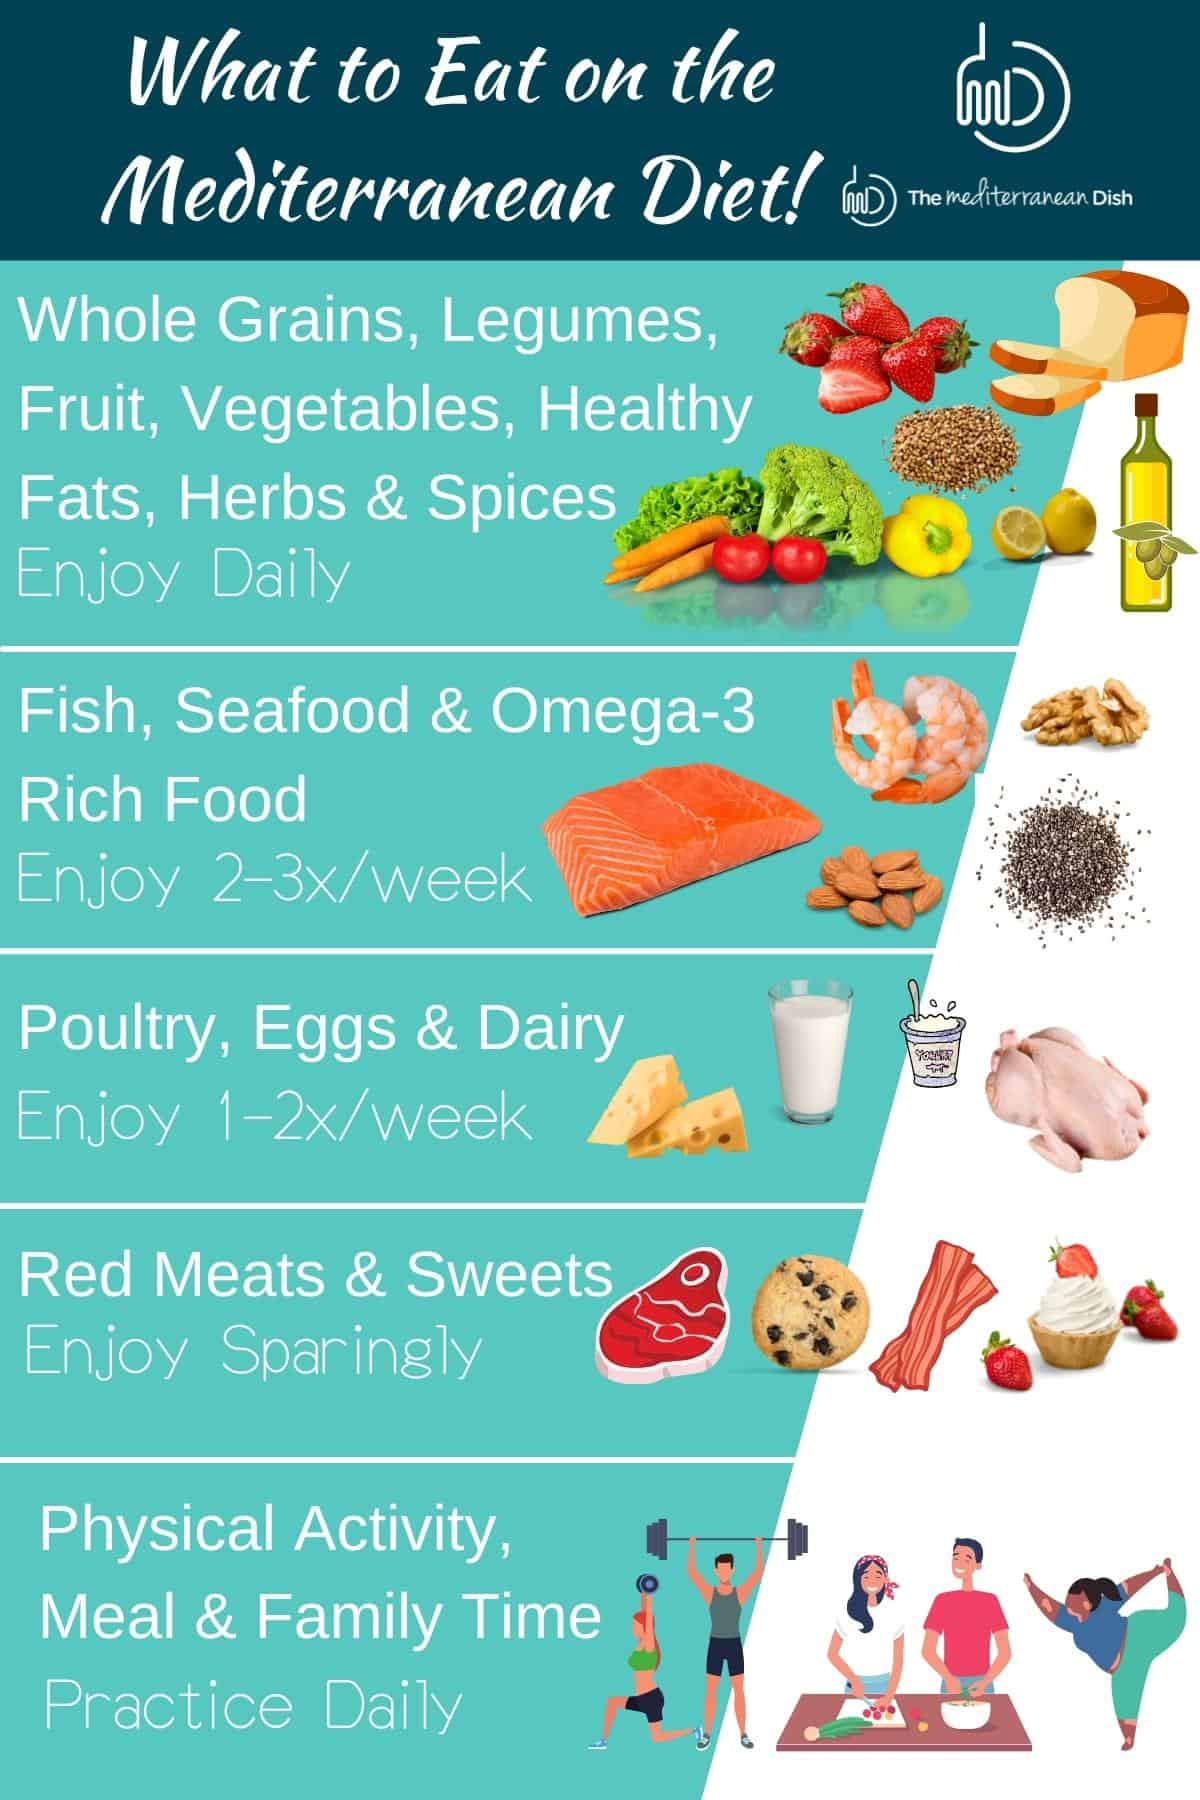 Mediterranean diet tips